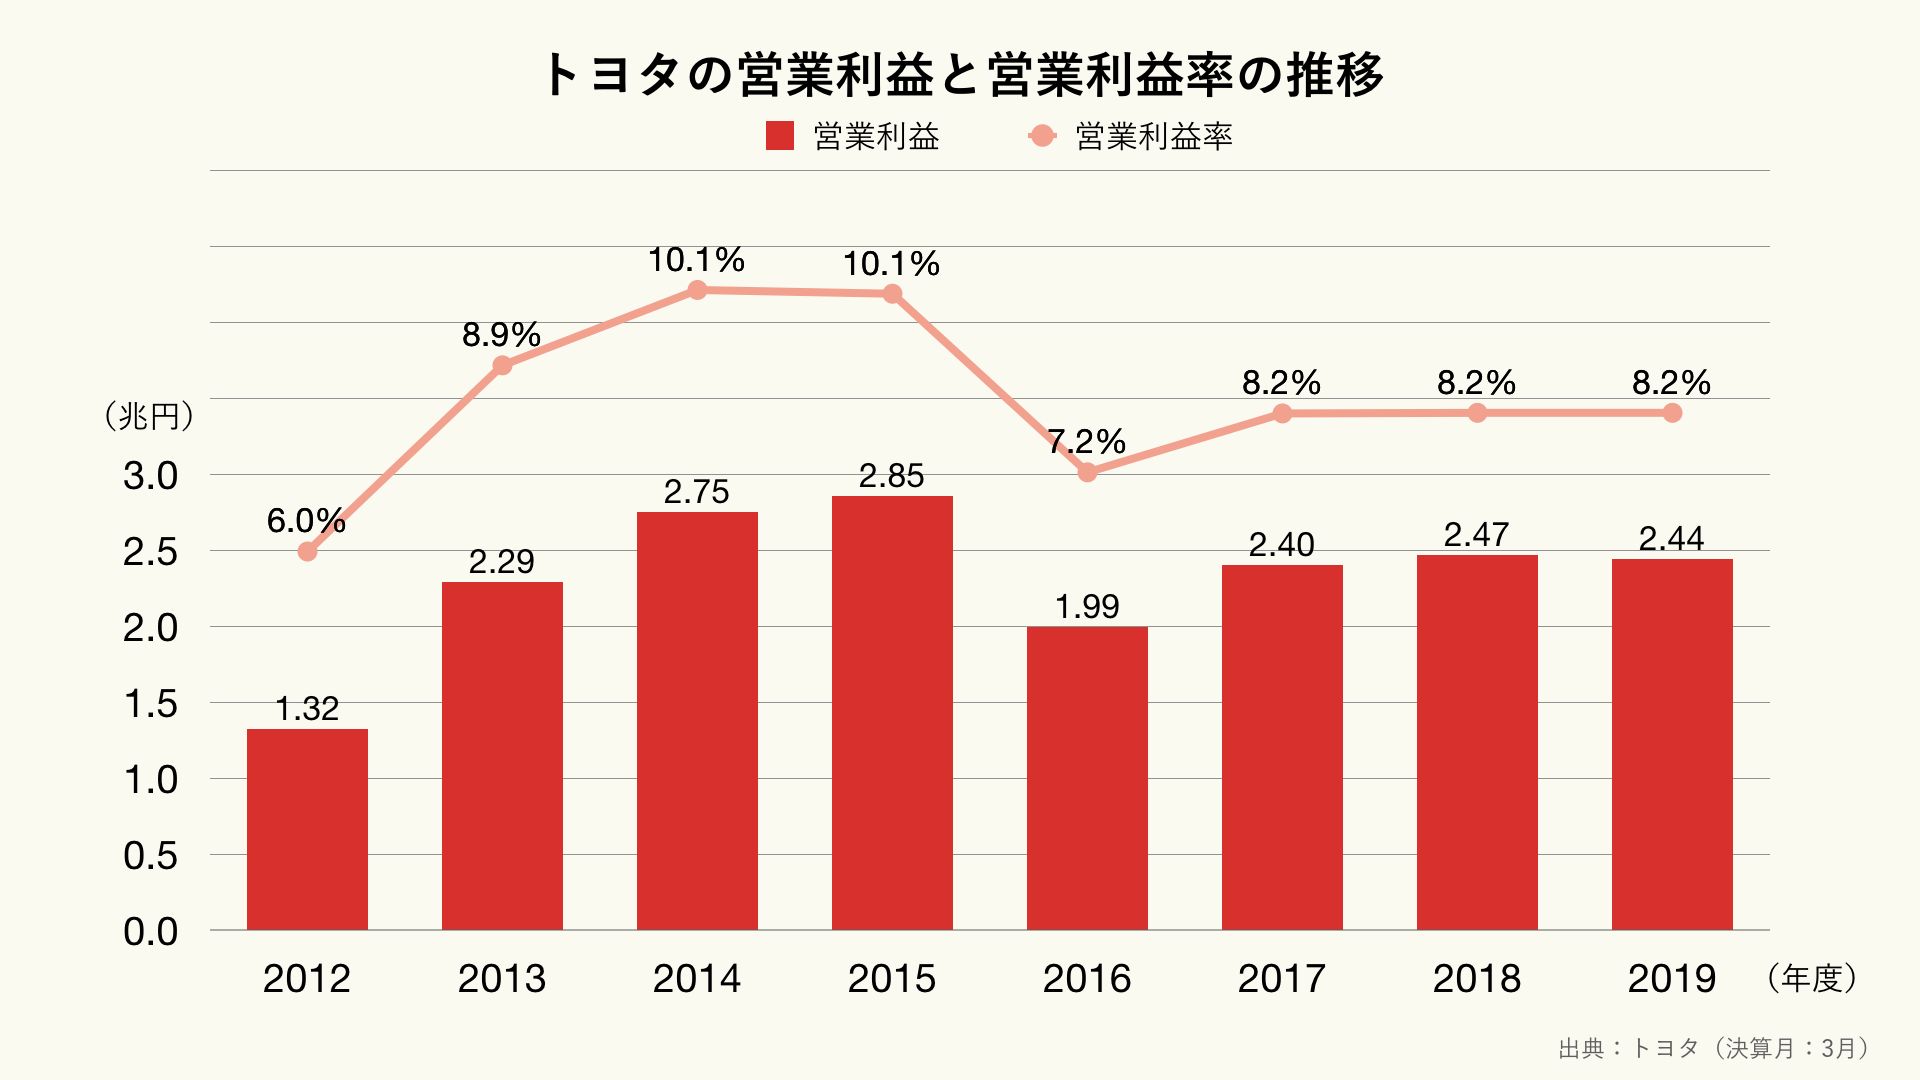 トヨタの営業利益と営業利益率の推移のグラフ